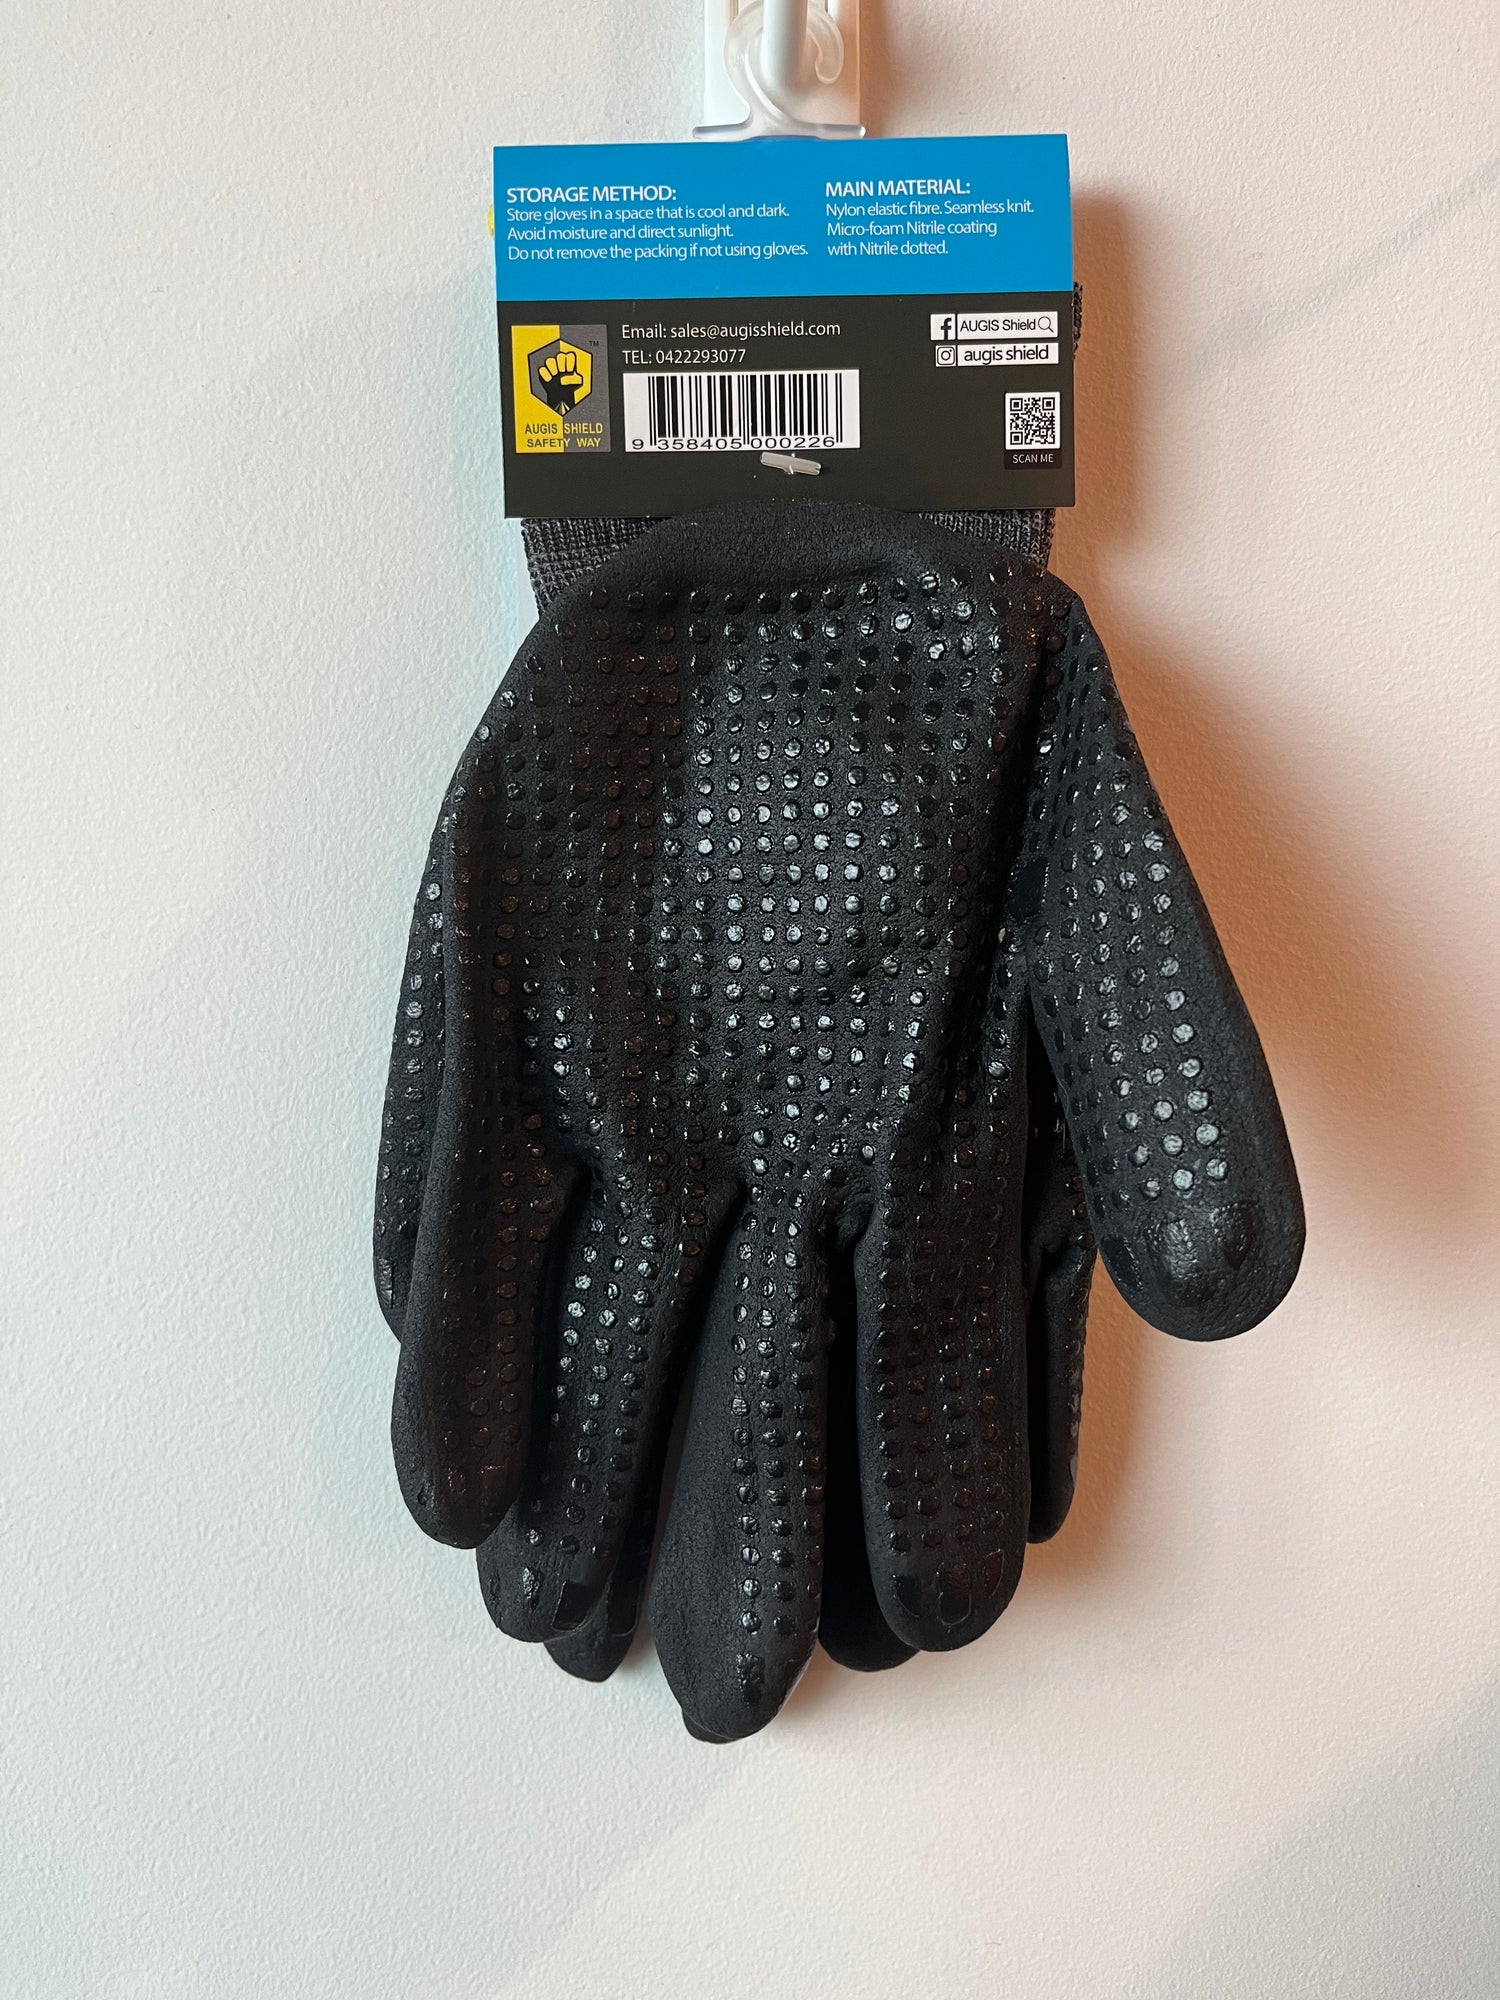 UltraLight Safety Work Gloves Men Women Mechanic Gardening Gloves